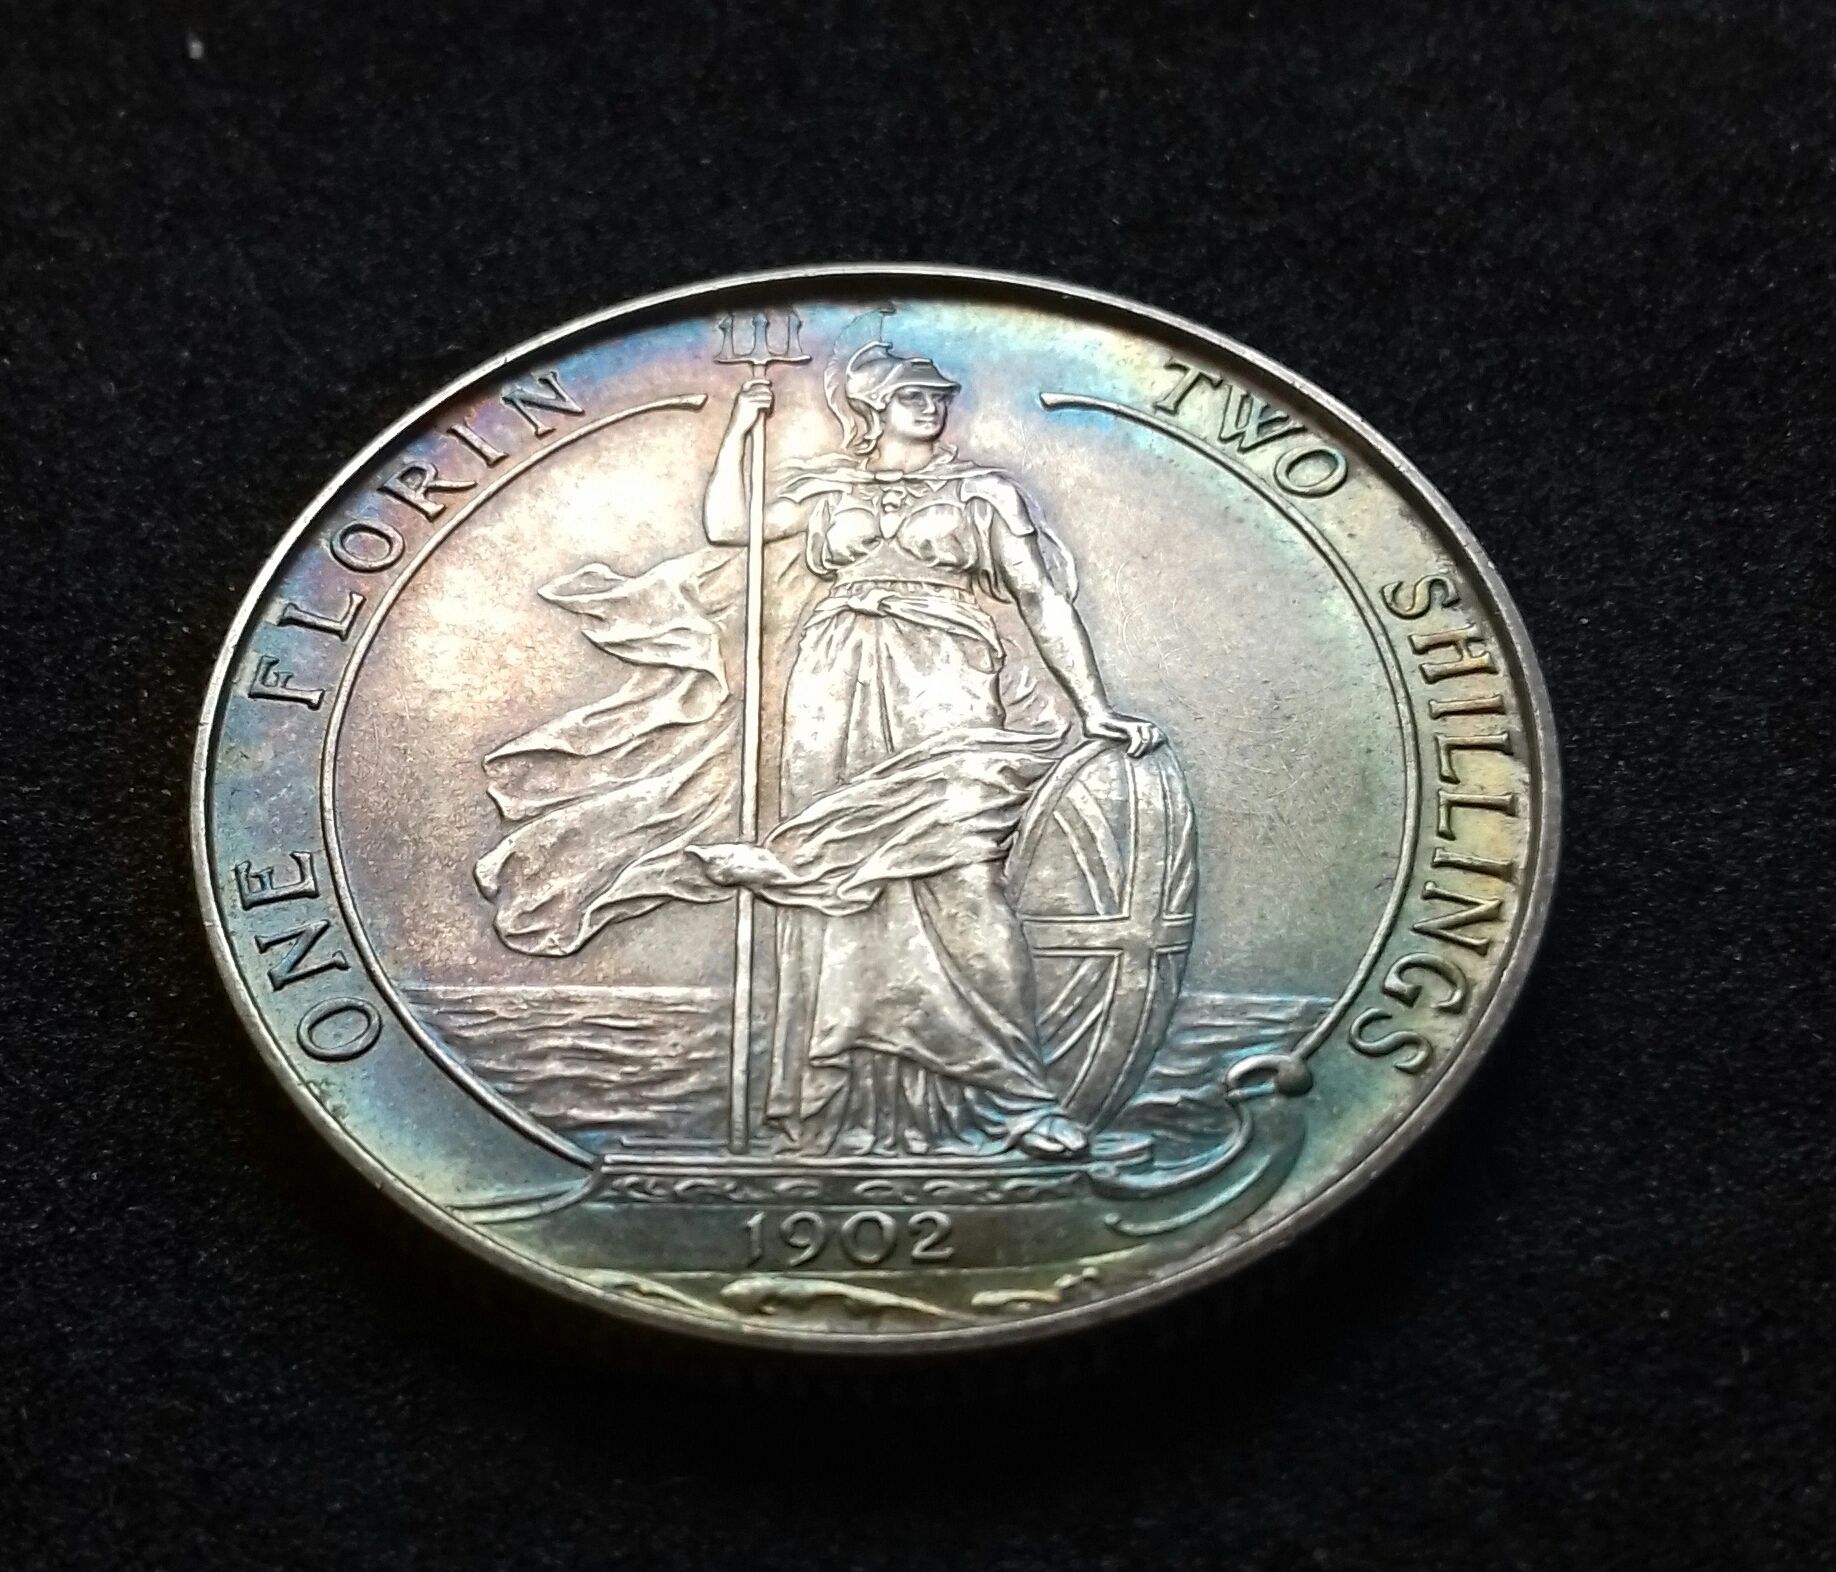 Britannia Coins